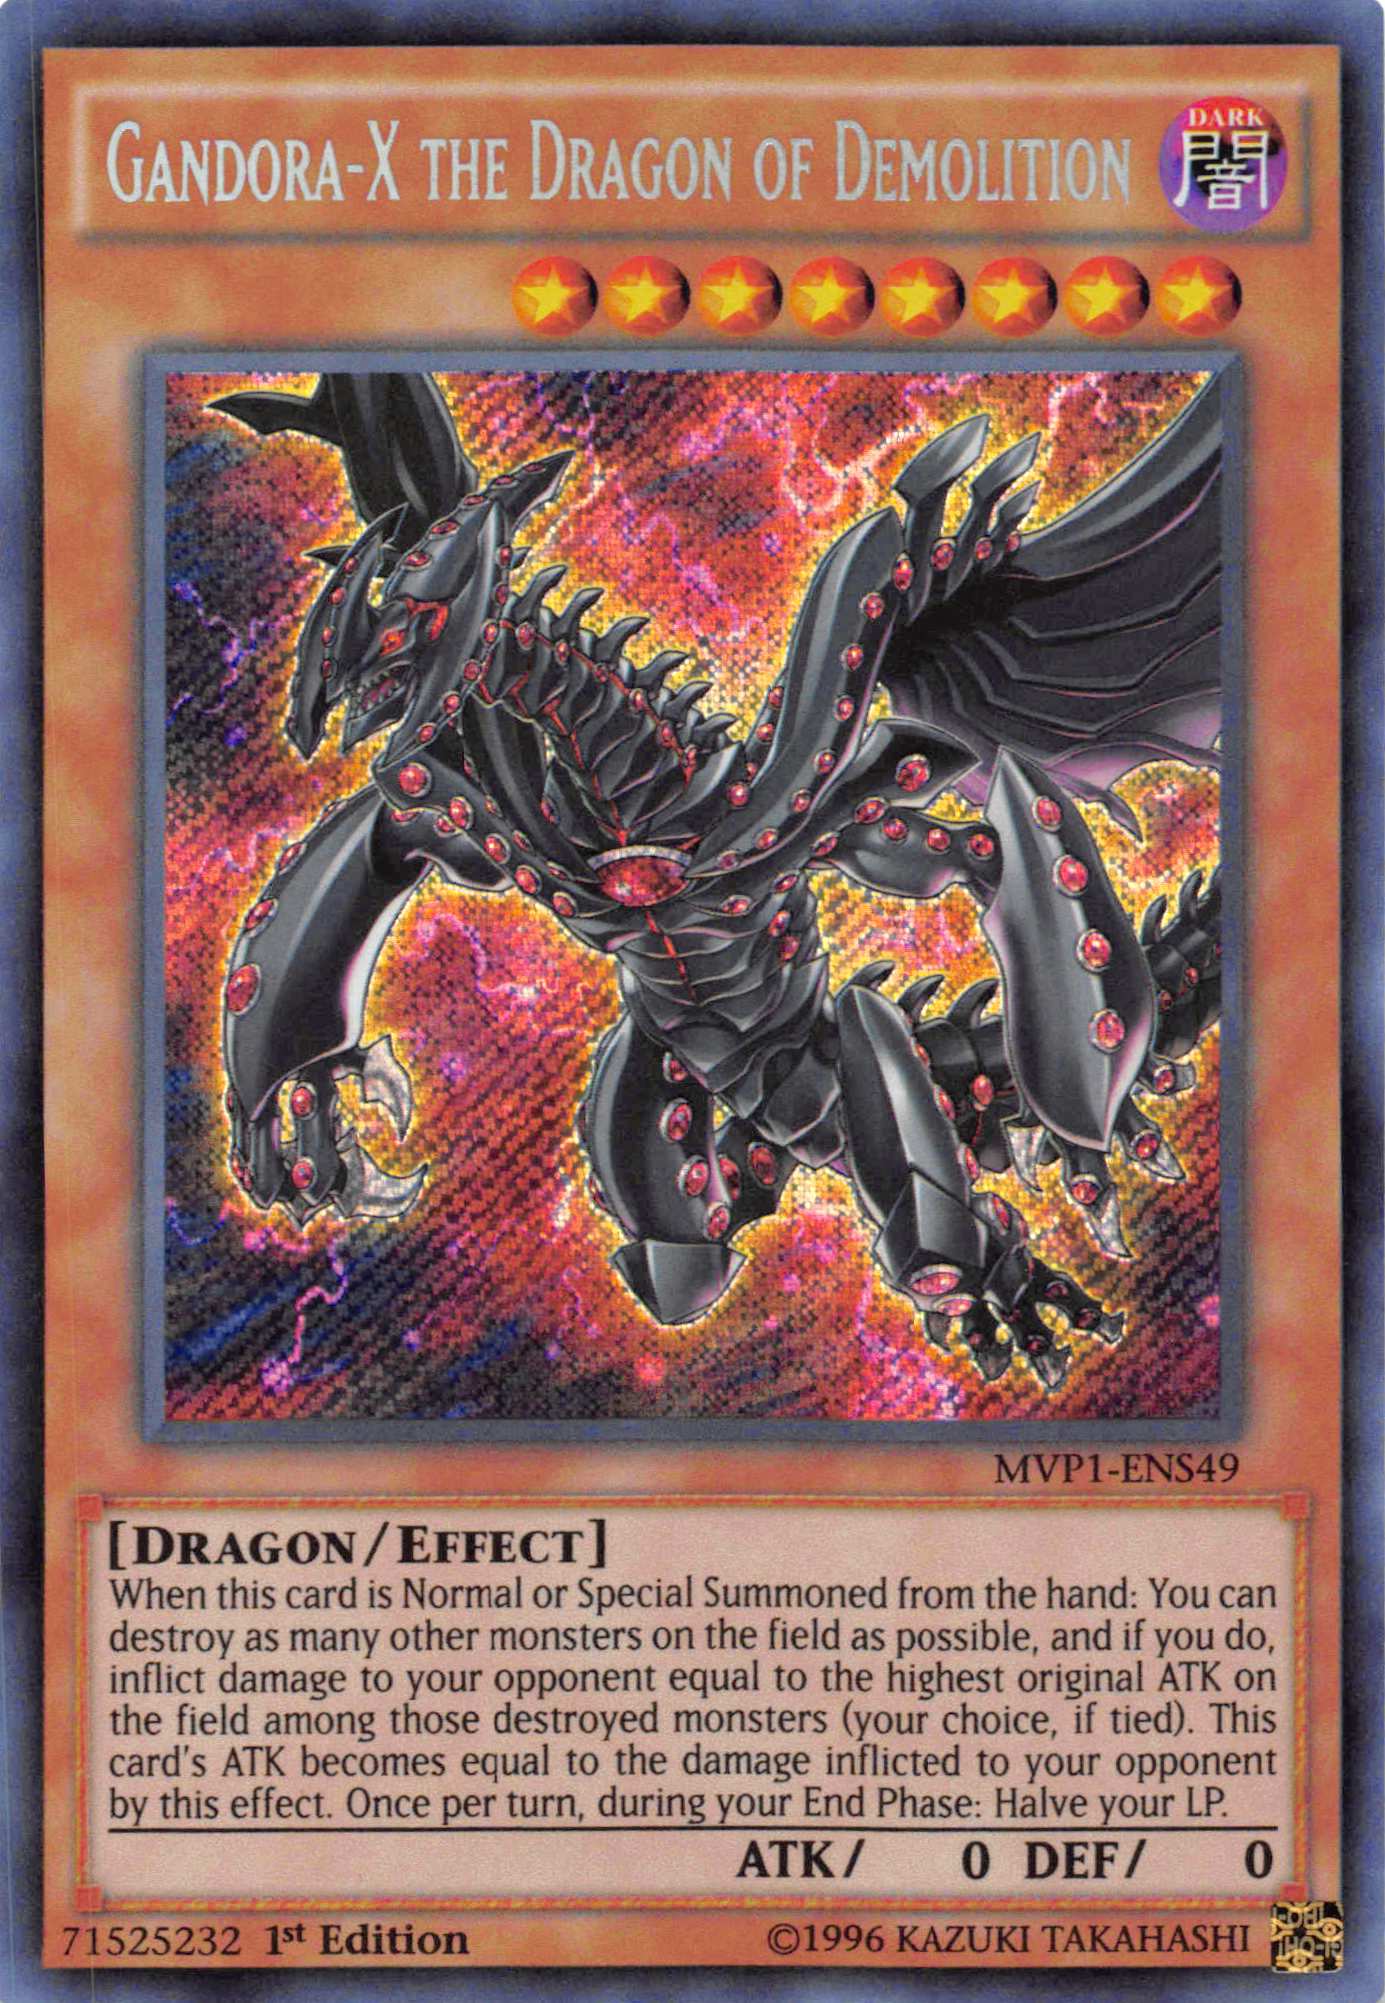 Gandora-X the Dragon of Demolition [MVP1-ENS49] Secret Rare